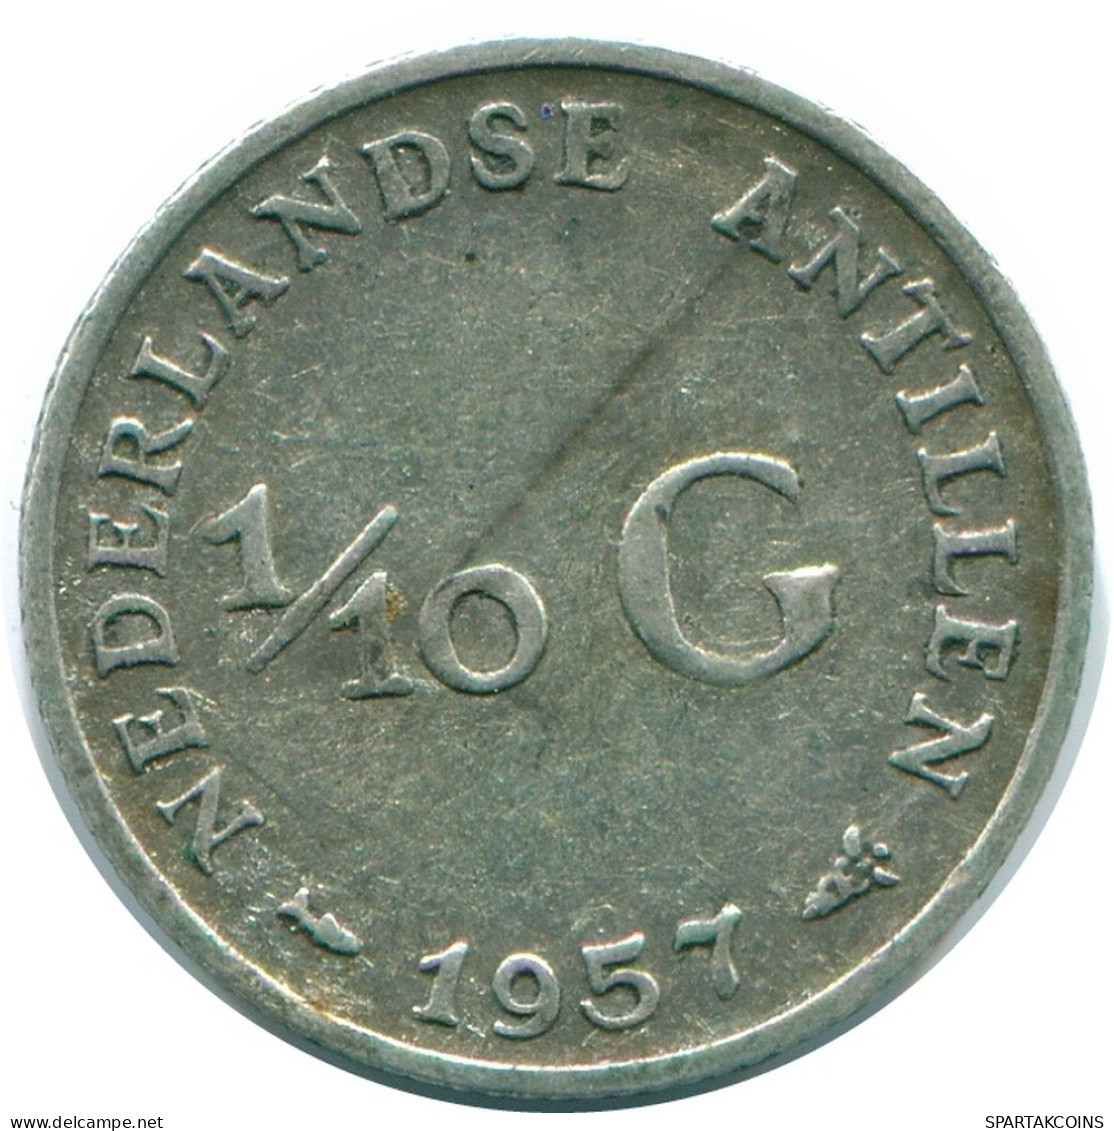 1/10 GULDEN 1957 NIEDERLÄNDISCHE ANTILLEN SILBER Koloniale Münze #NL12180.3.D.A - Niederländische Antillen